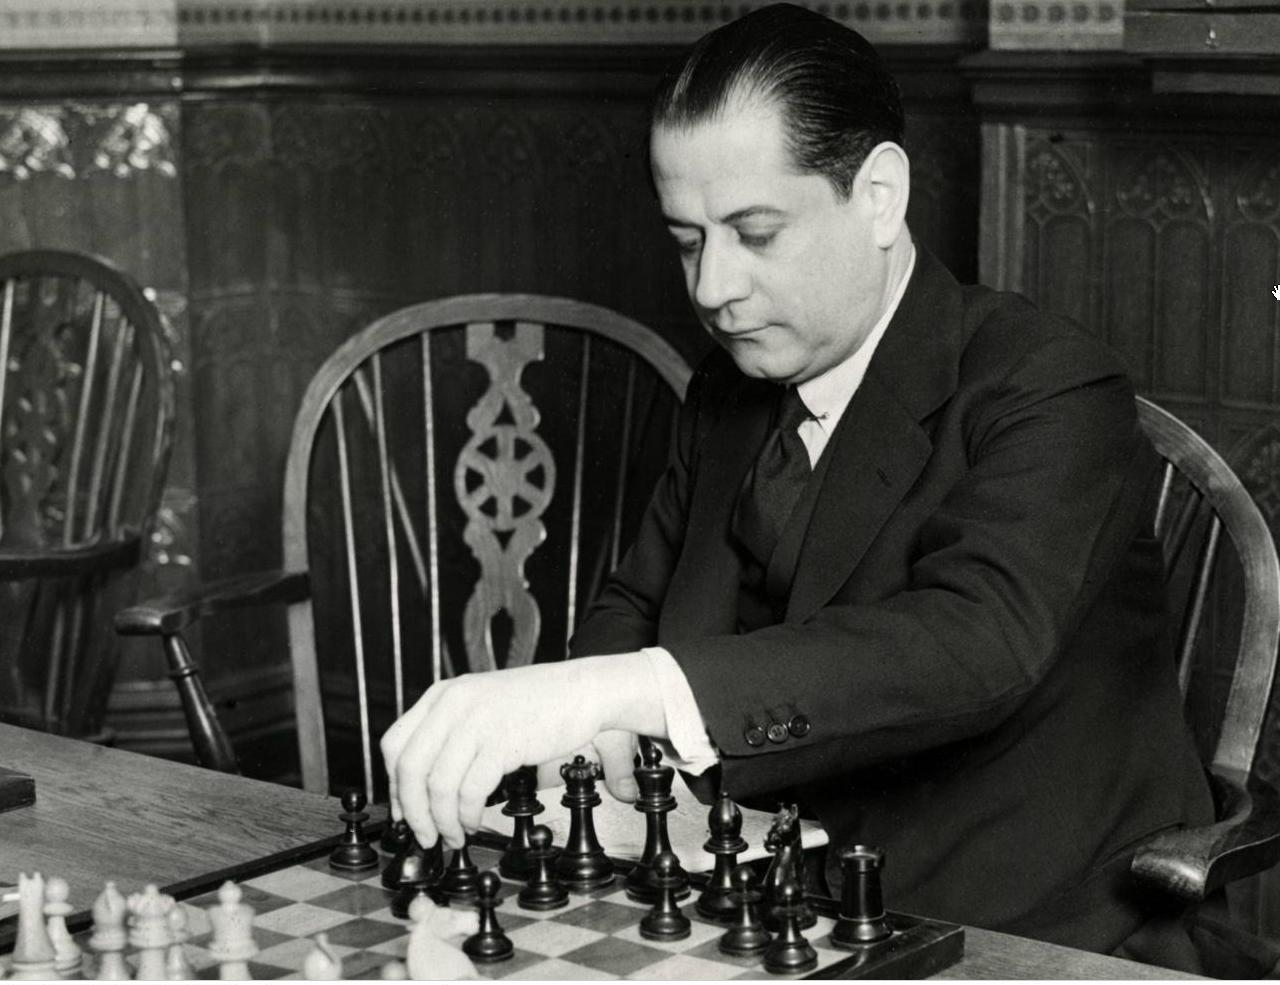 Лучший игрок в шахматы. Хосе Рауль Капабланка шахматист. Кубинский шахматист Капабланка.